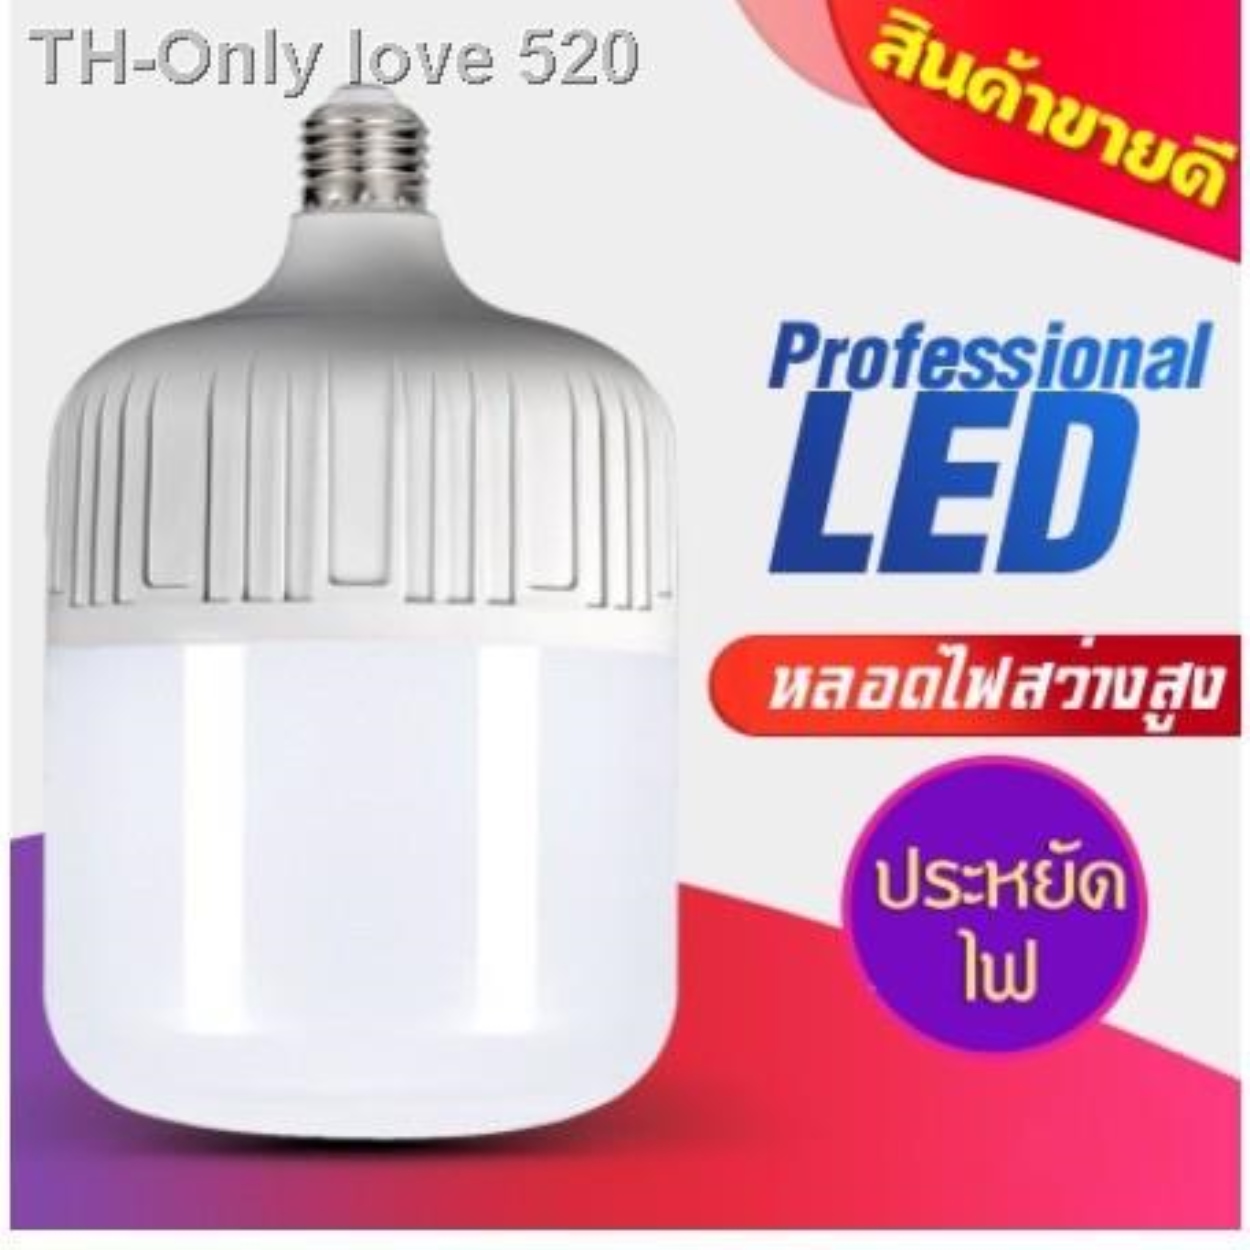 ETหลอดไฟLED ใช้กับขั้วหลอดไฟ E27 หลอดLED Bulb หลอดไฟ LED HighBulb light ใช้ไฟฟ้า220V 35w 45w 55w ราคาถูก